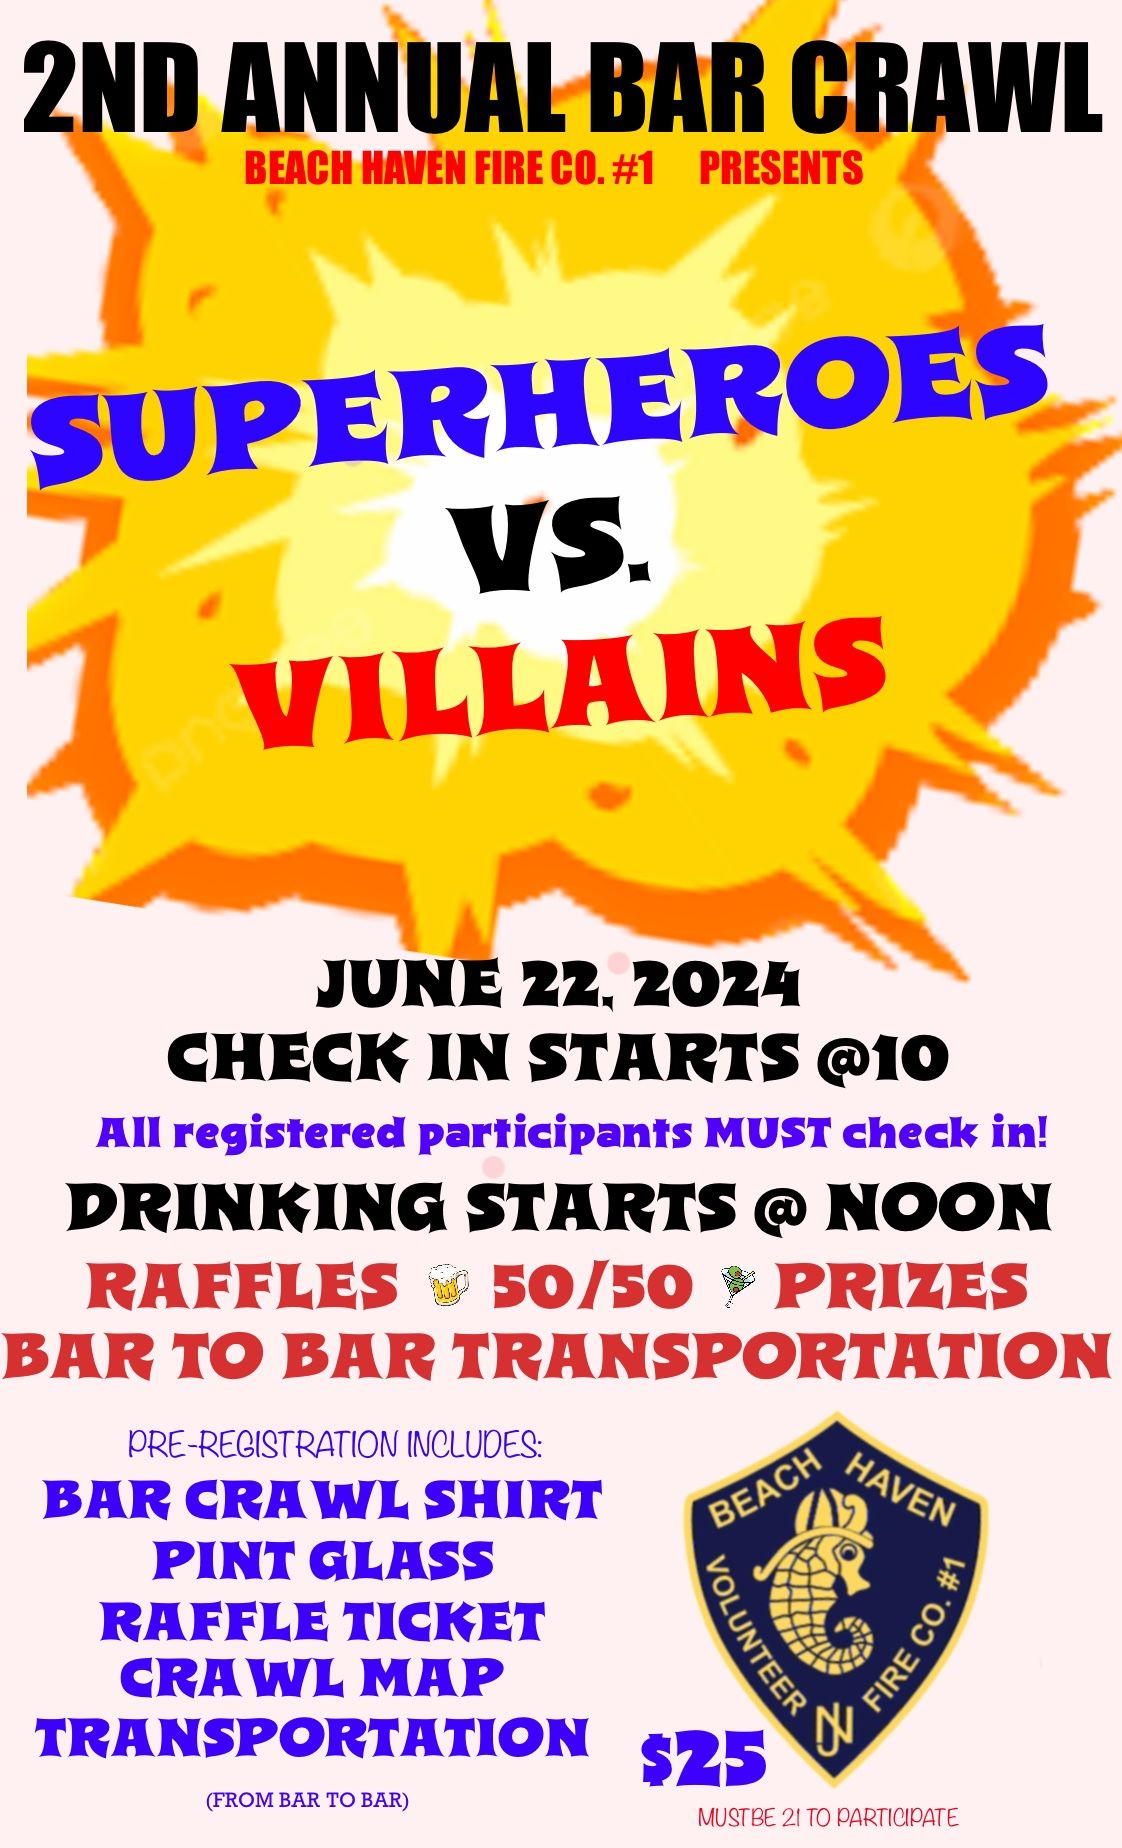 Super Heroes Vs. Villains Bar Crawl 